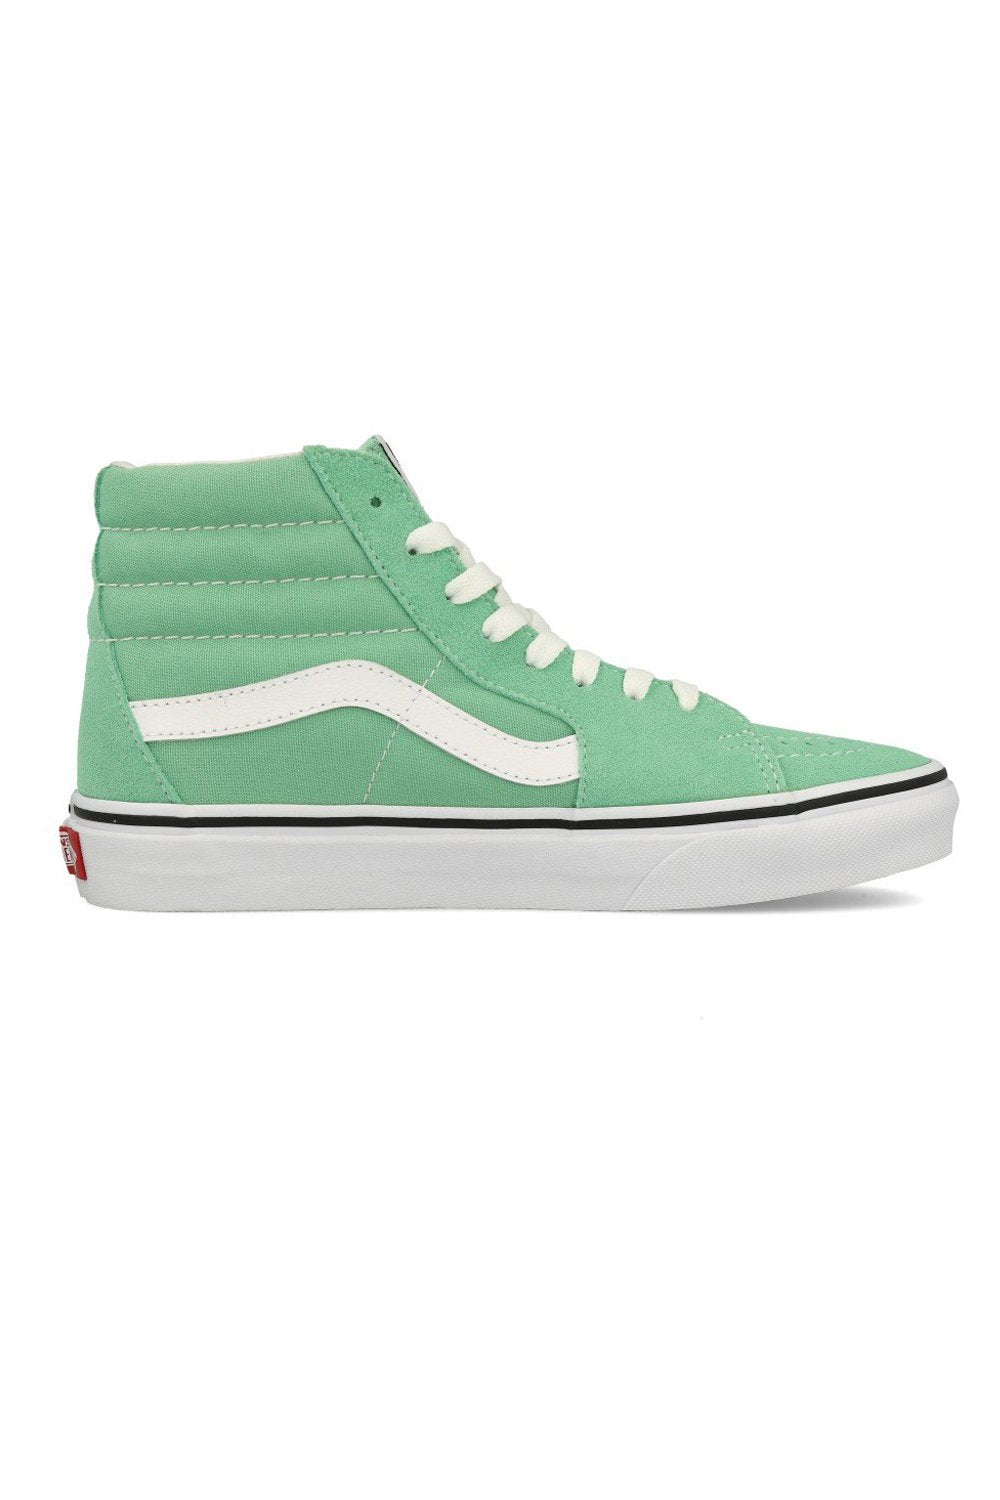 Vans SK8 Hi Neptune Green / True White Shoe